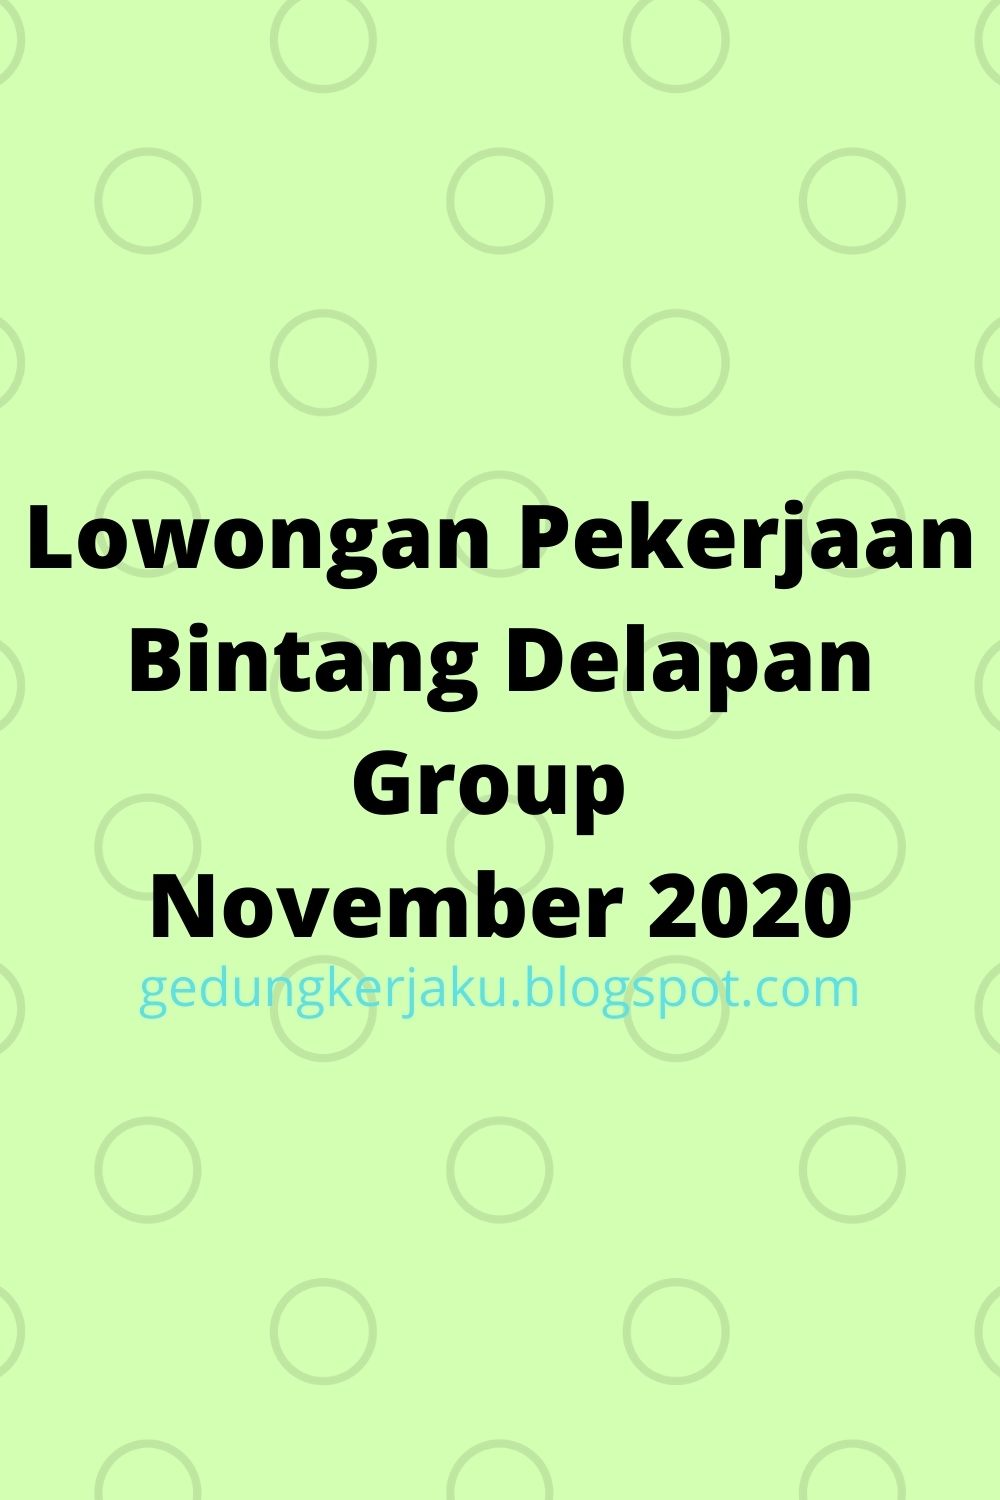 Lowongan Pekerjaan Bintang Delapan Group November 2020